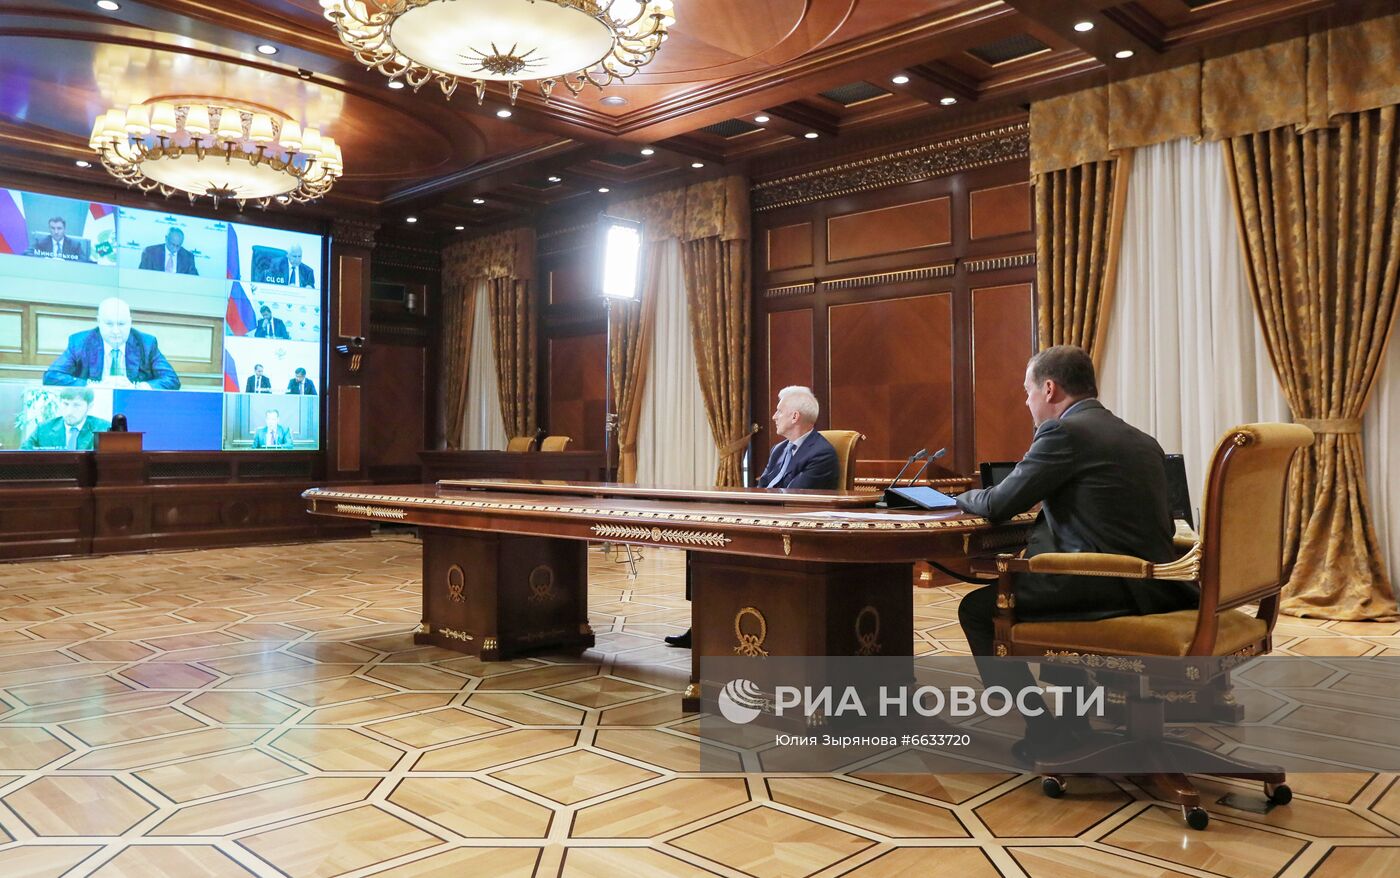 Заместитель председателя Совета безопасности РФ Д. Медведев провел совещание по развитию аграрных отраслей экономики РФ